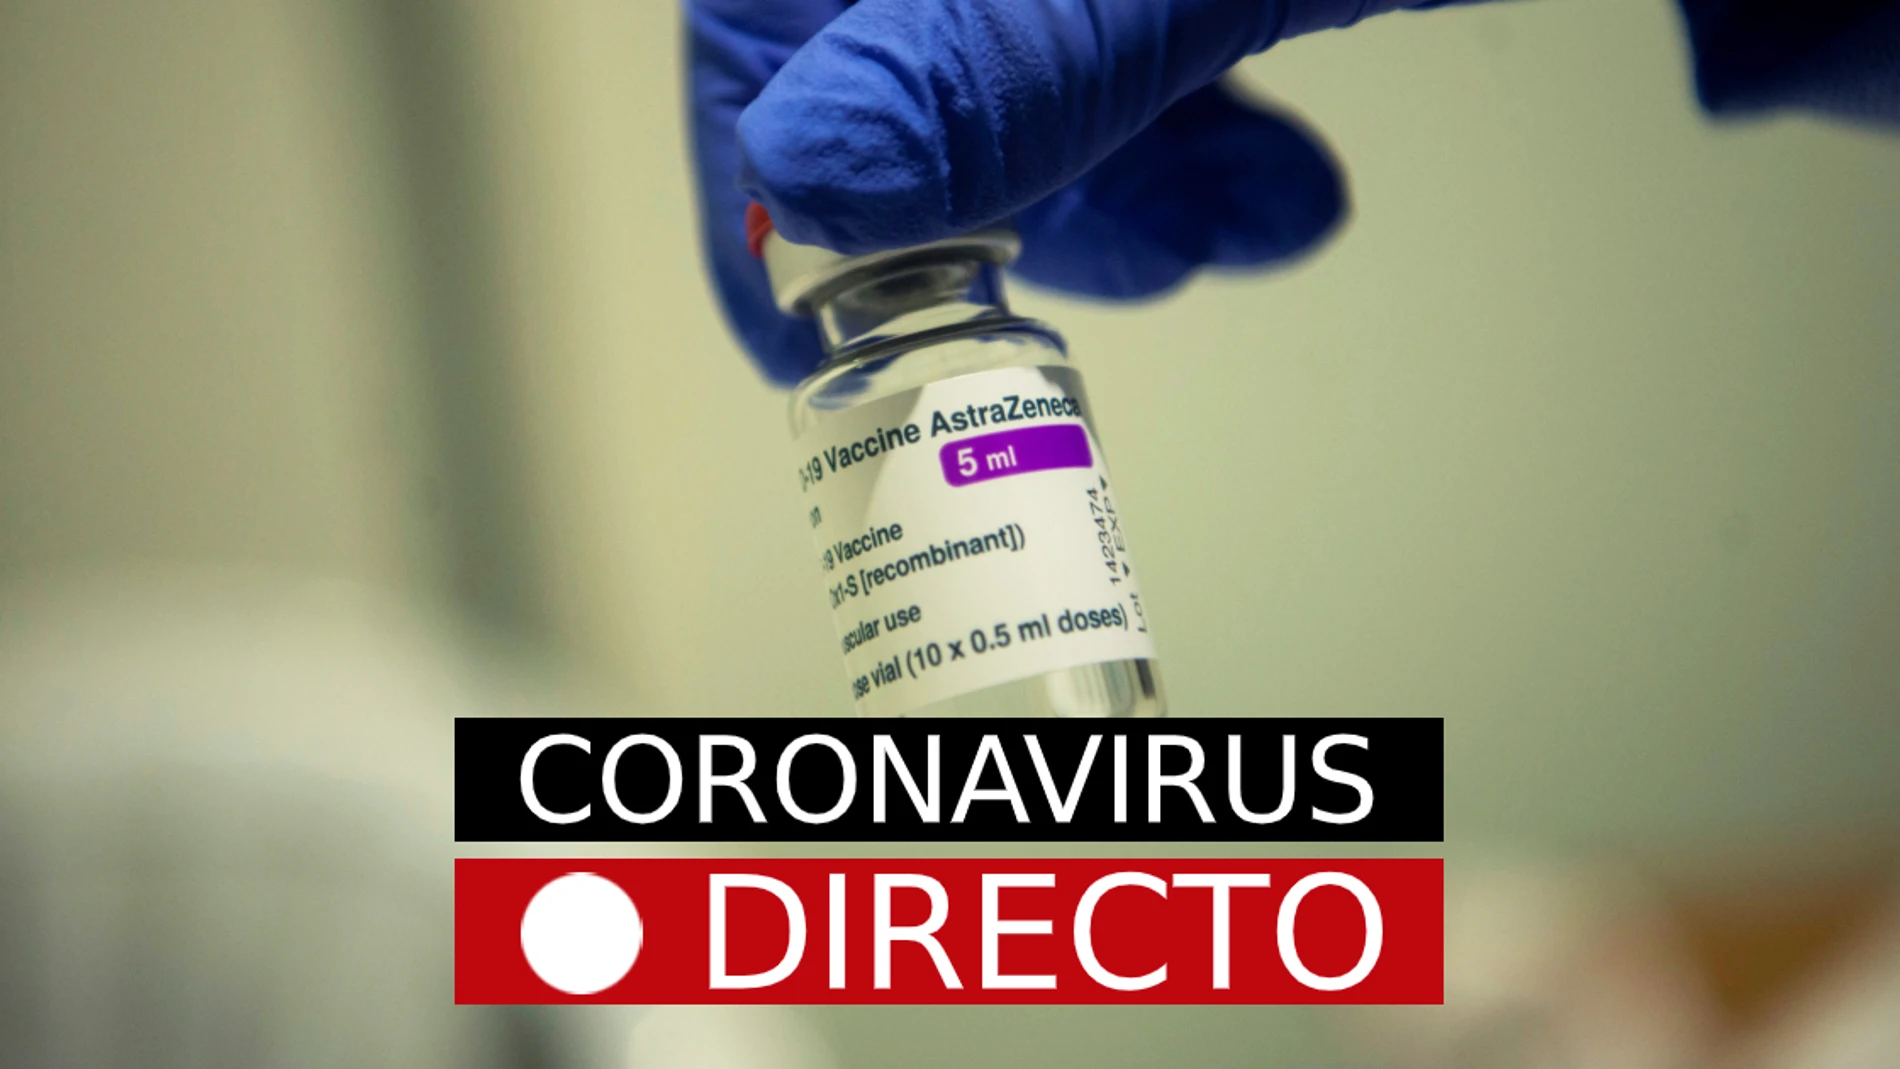 COVID-19, en directo | Vacuna con AstraZeneca, restricciones en España y Madrid por coronavirus, en directo